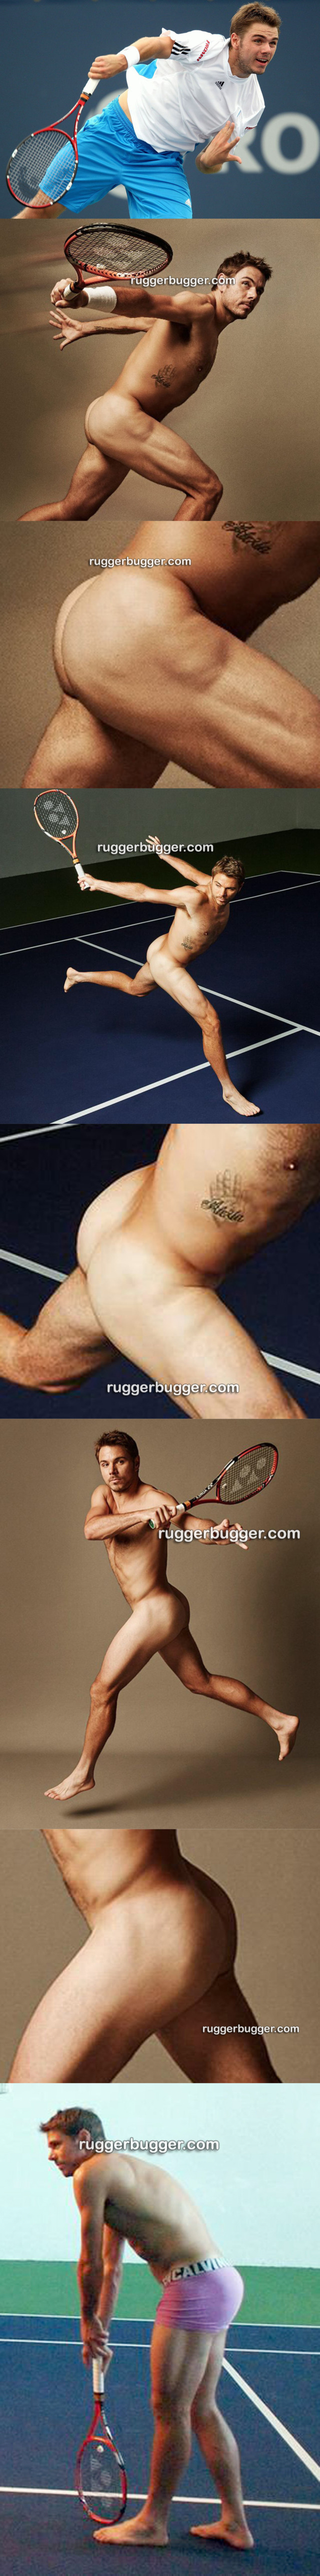 sportsmen naked tennis player stan wawrinka ass